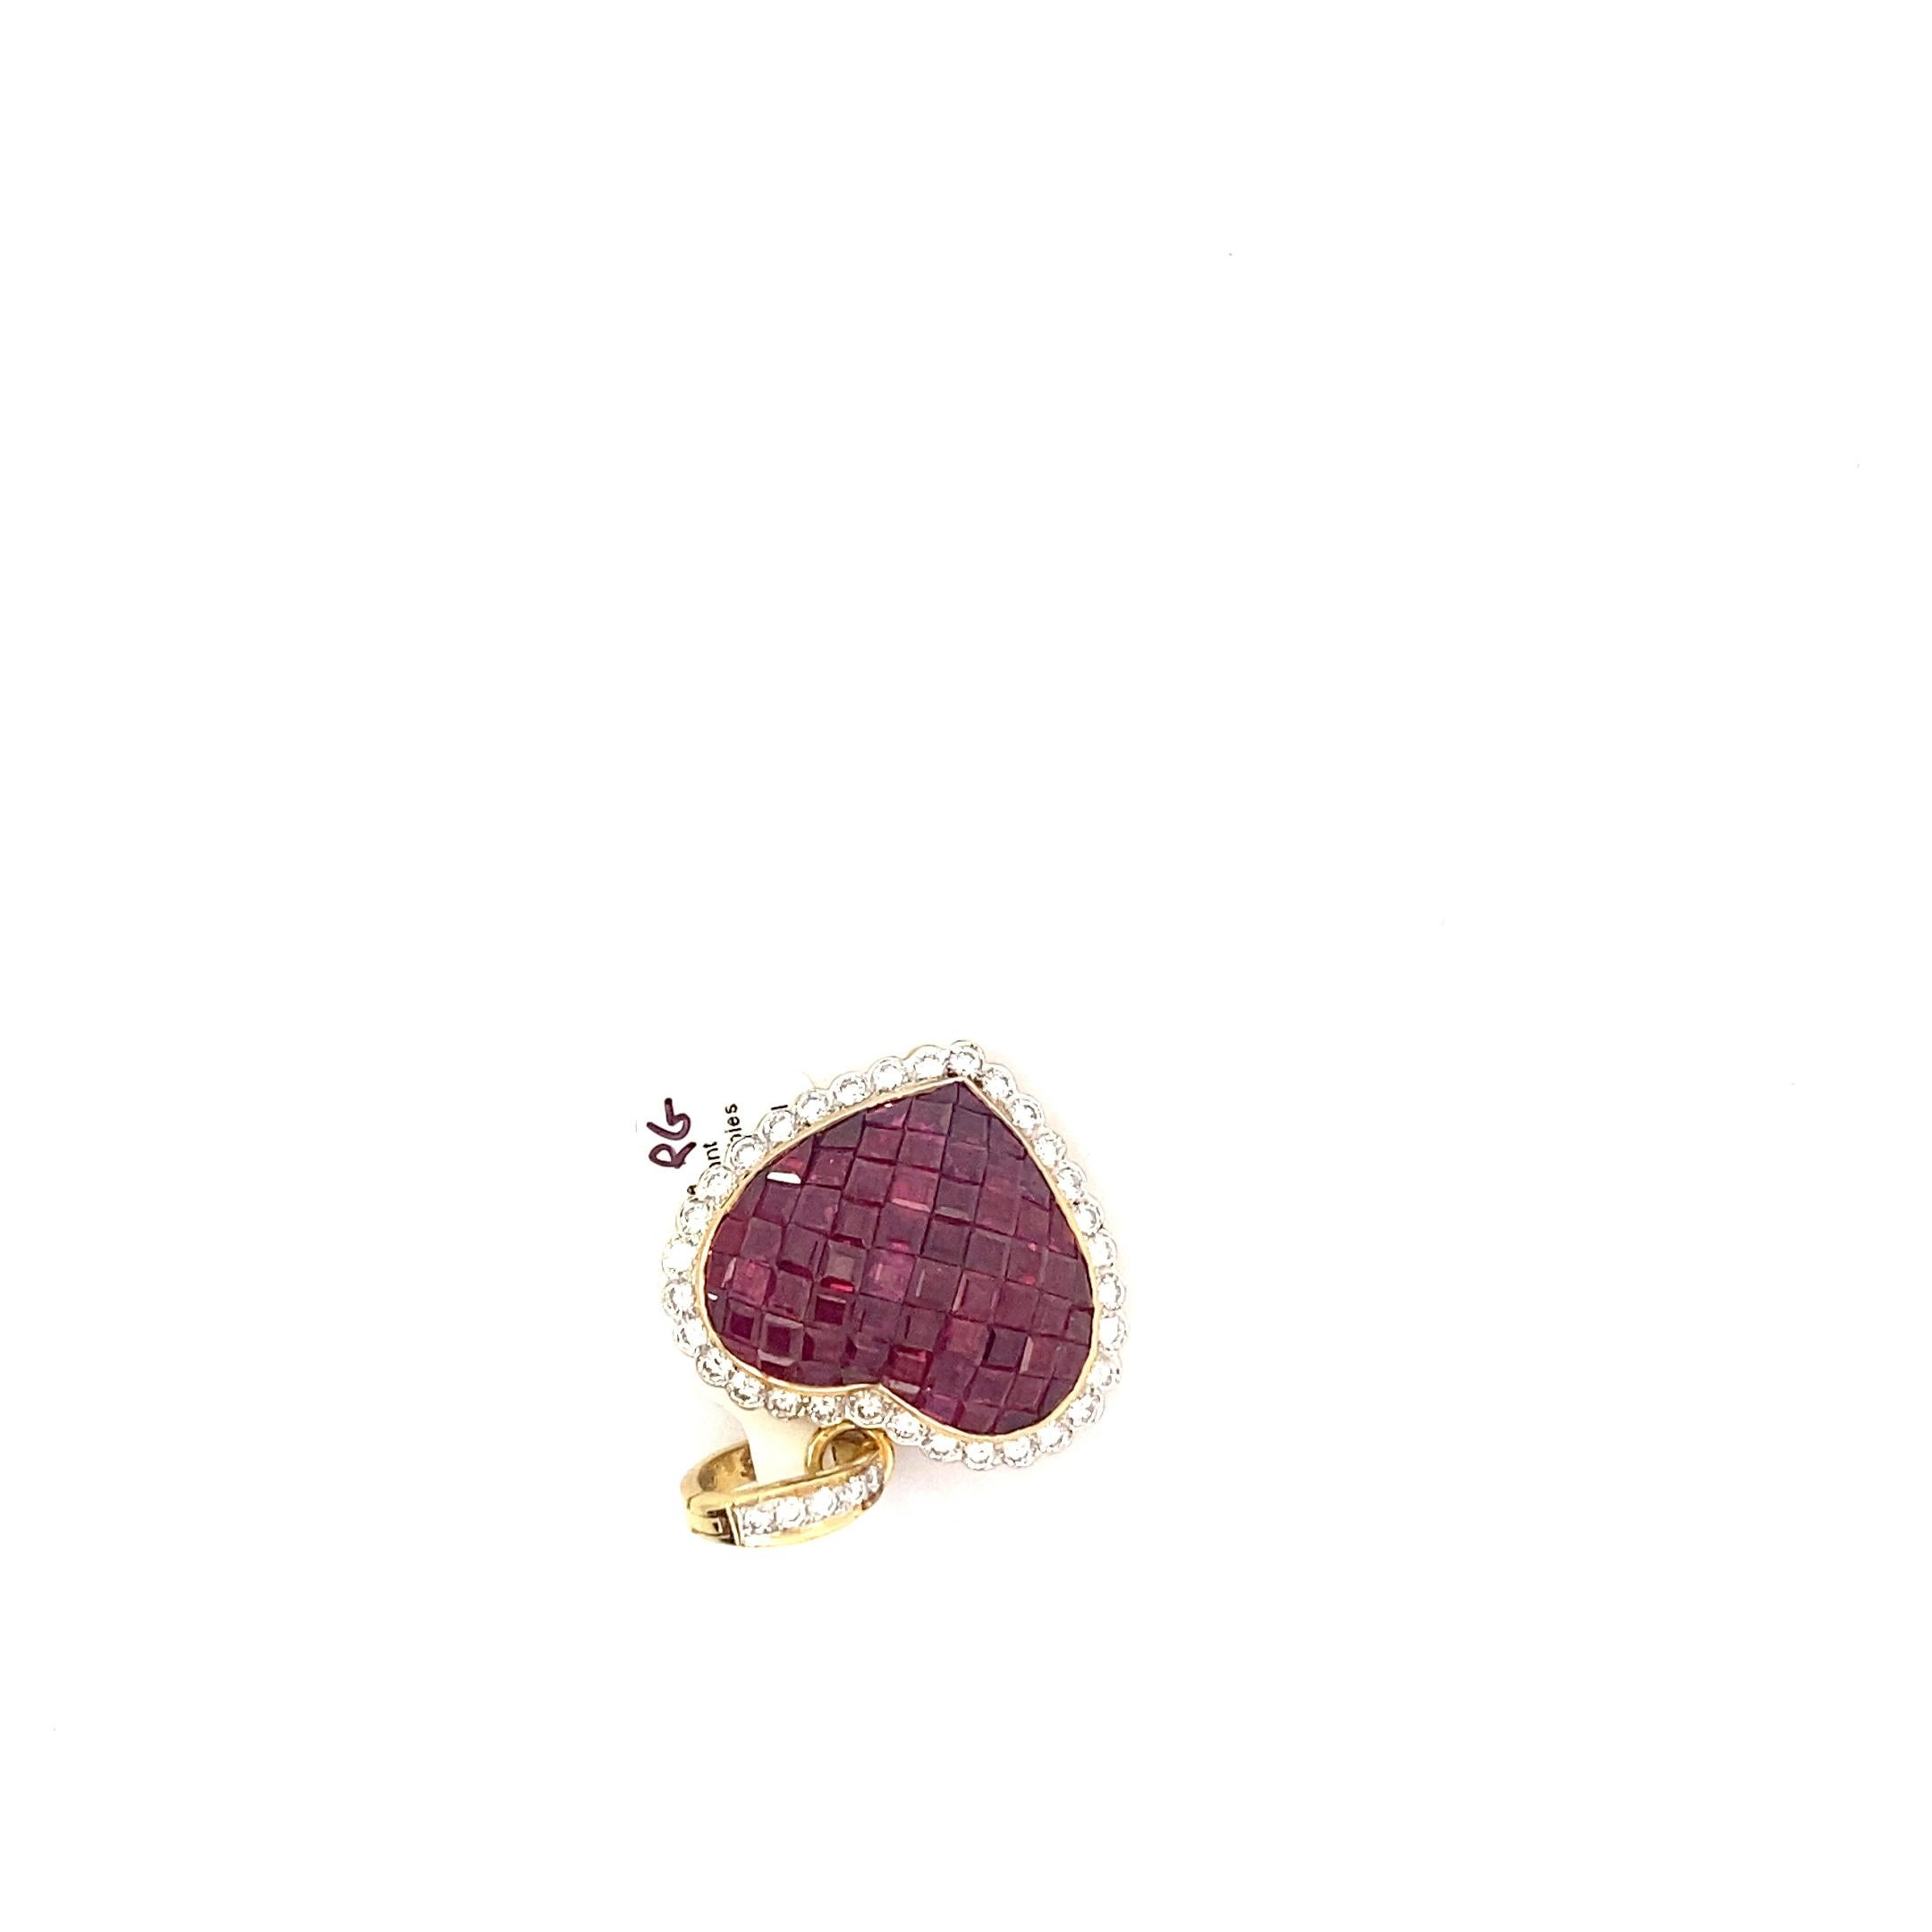 Ce magnifique et lourd pendentif vintage présente des dizaines de rubis taillés en escalier qui forment le cœur. Ces rubis sont d'une couleur délicieusement foncée avec une nuance violette profonde. La mosaïque luxueuse de rubis est encadrée d'une